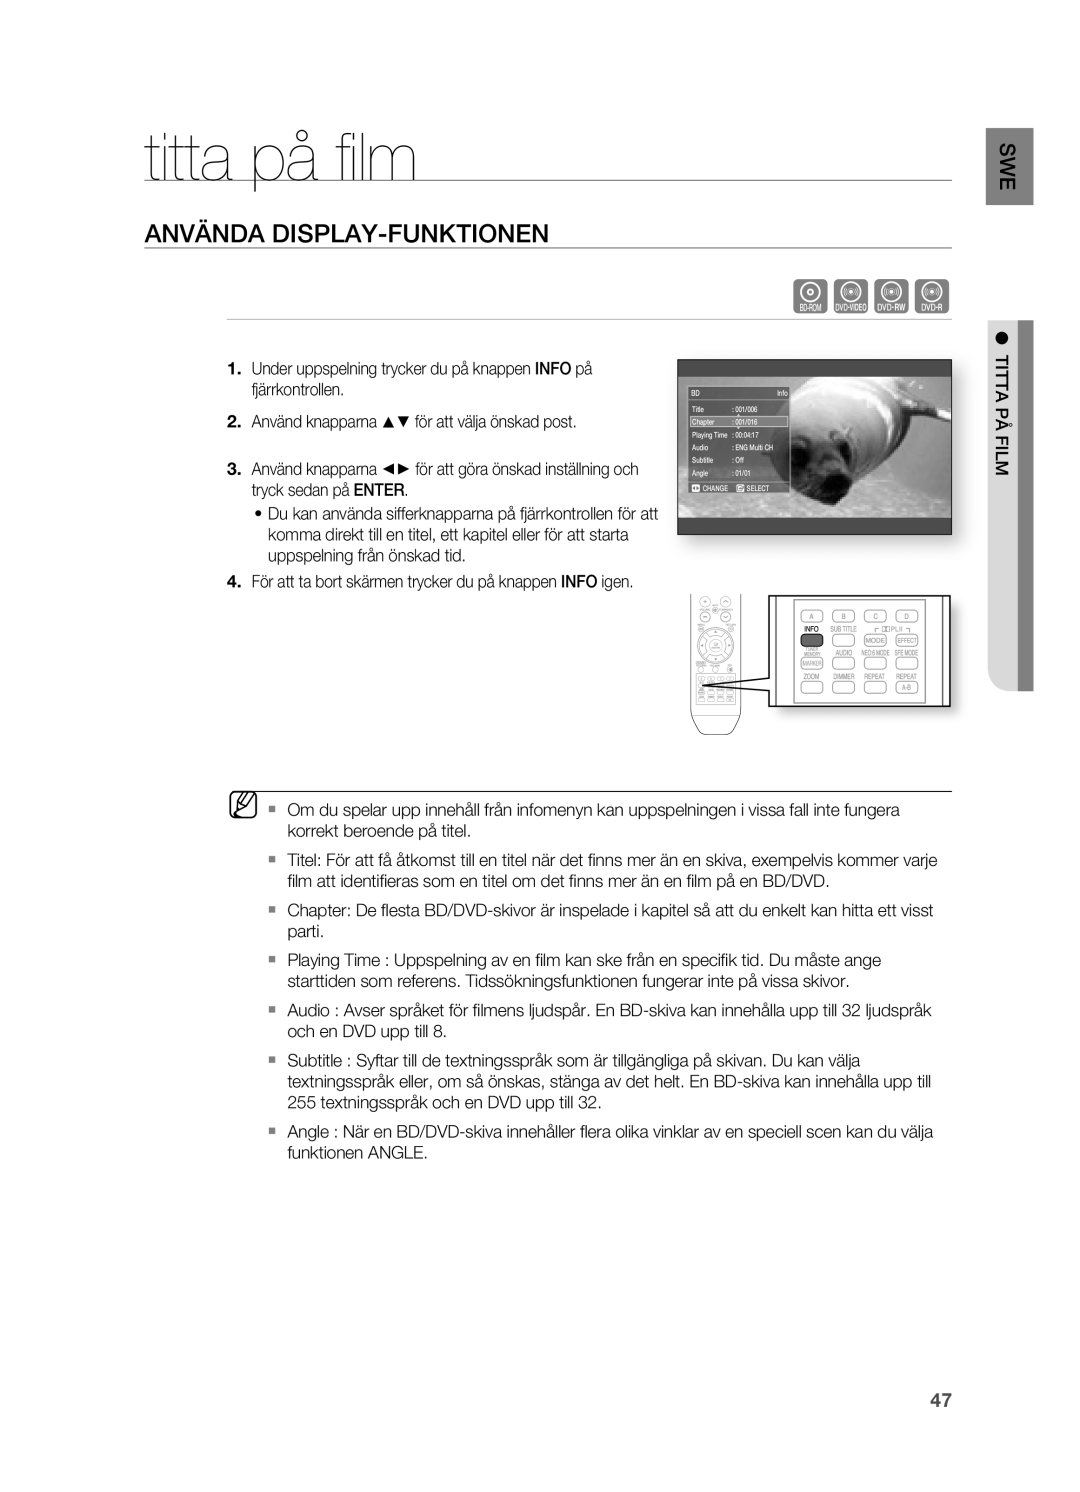 Samsung HT-BD2R/XEE, HT-BD2ER/XEE manual Titta på ﬁ lm, ANVäNDA DISPLAY-FUNKTIONEN 